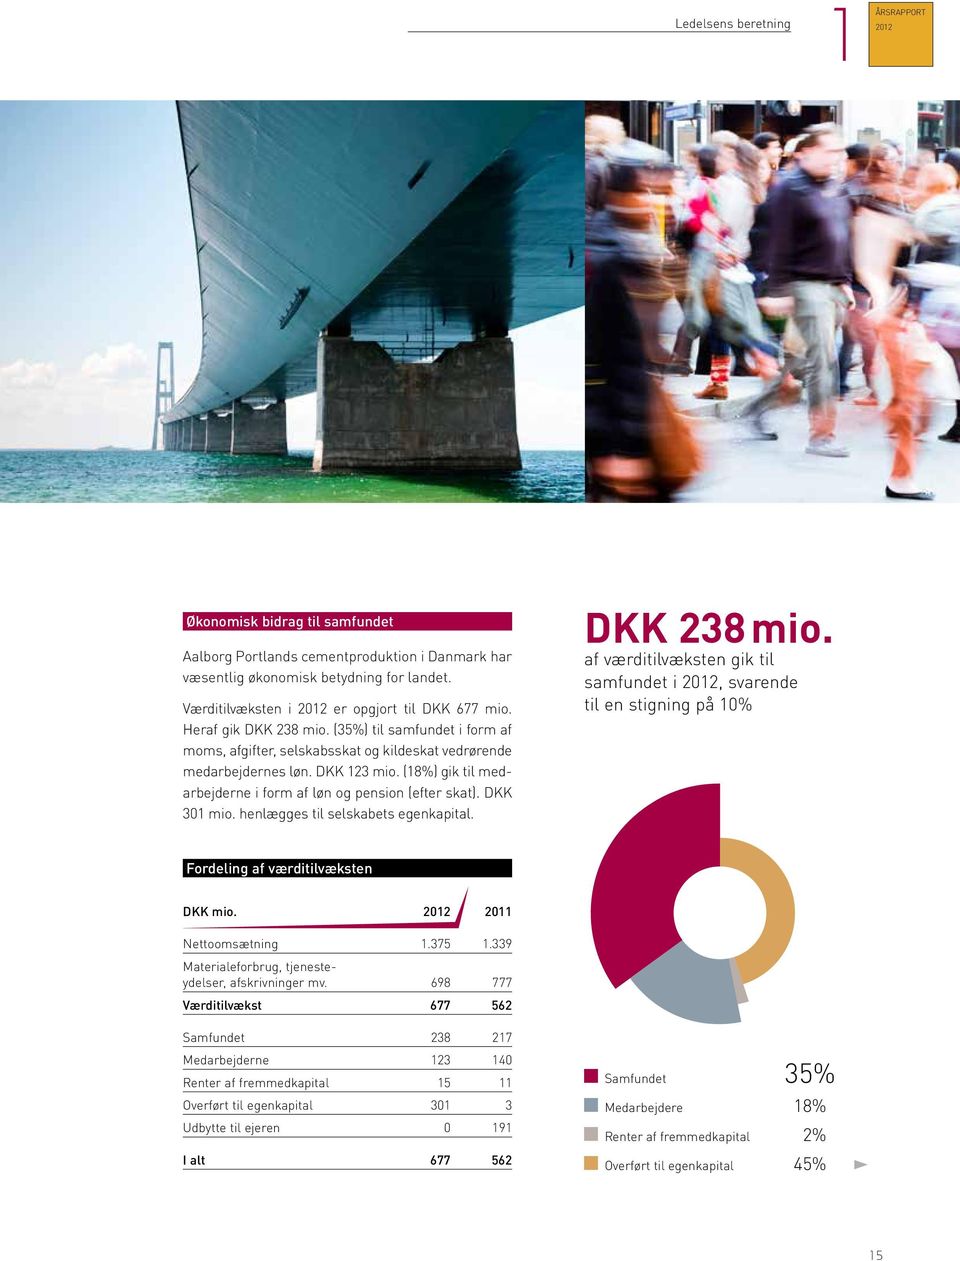 (18%) gik til medarbejderne i form af løn og pension (efter skat). DKK 301 mio. henlægges til selskabets egenkapital. DKK 238 mio.